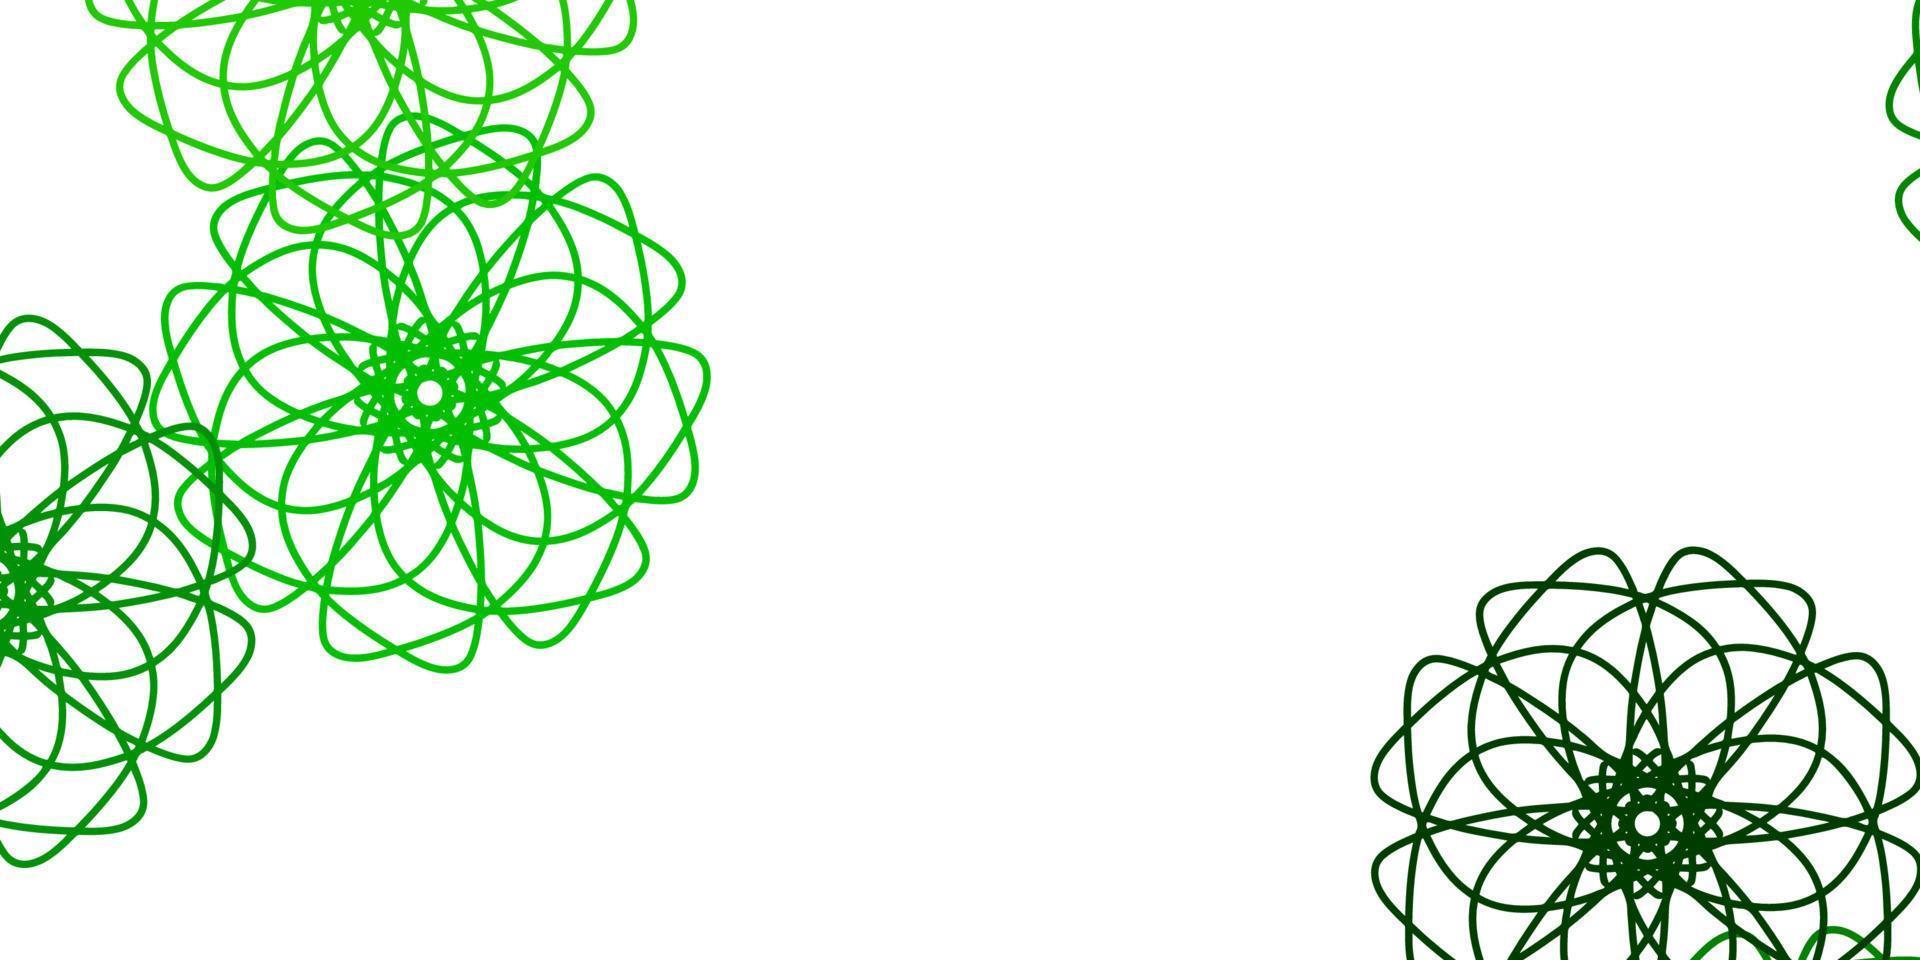 textura de doodle de vetor verde e amarelo claro com flores.